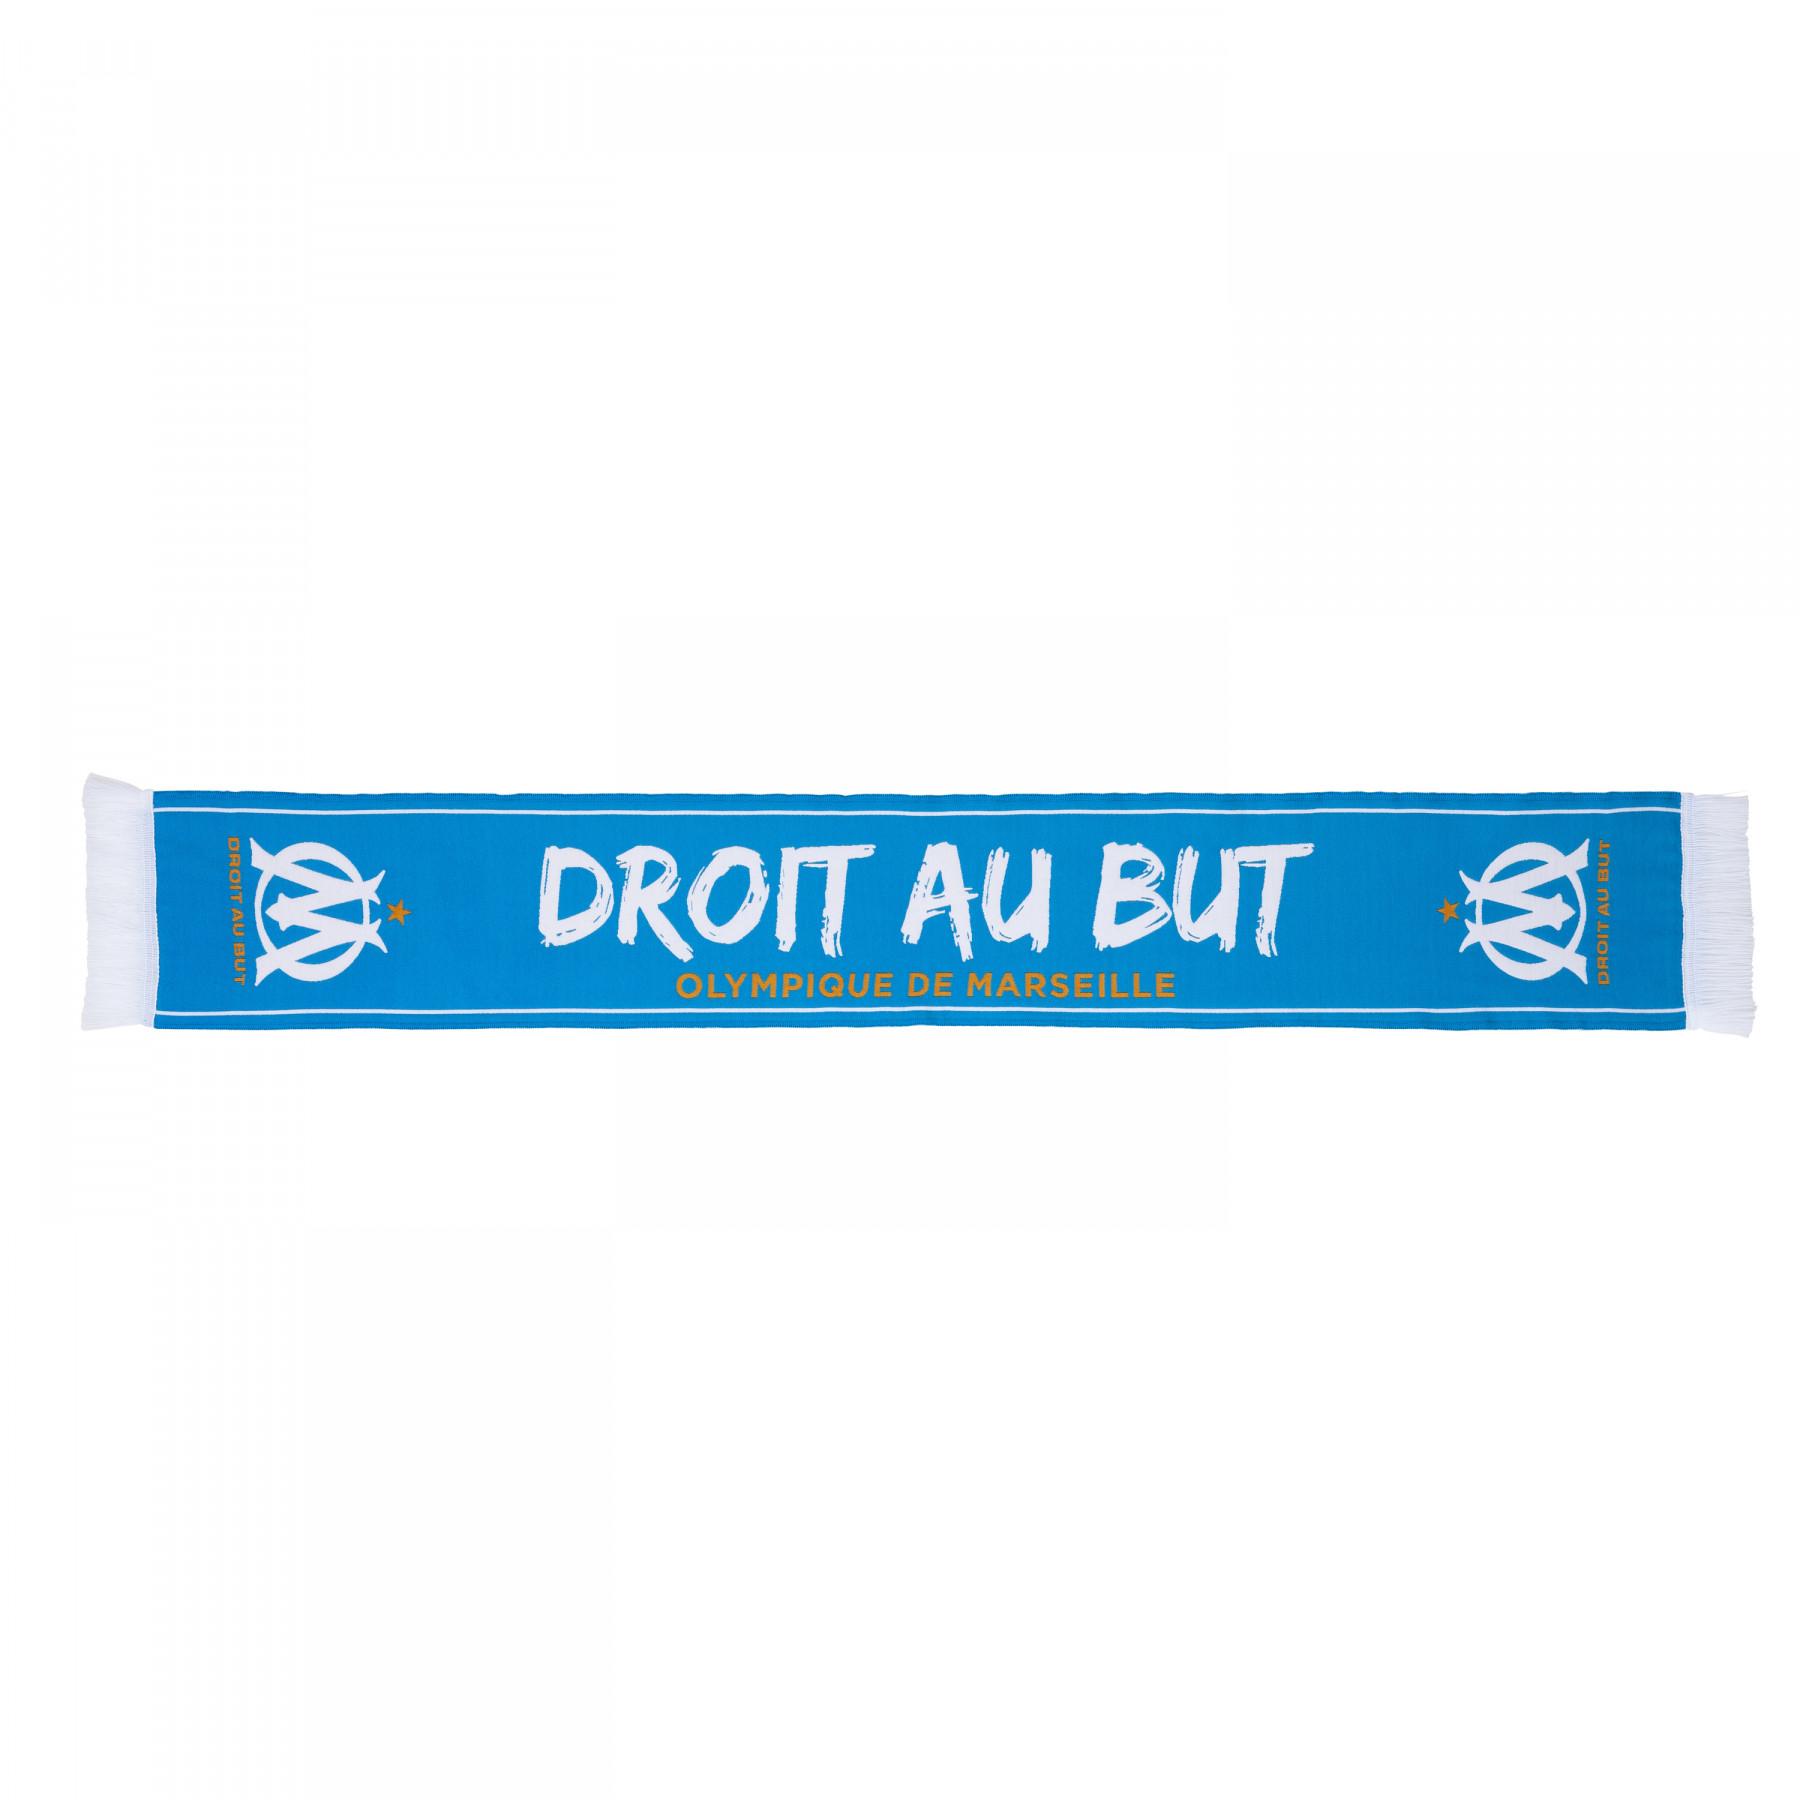 Scarf Olympique de Marseille Droit au but